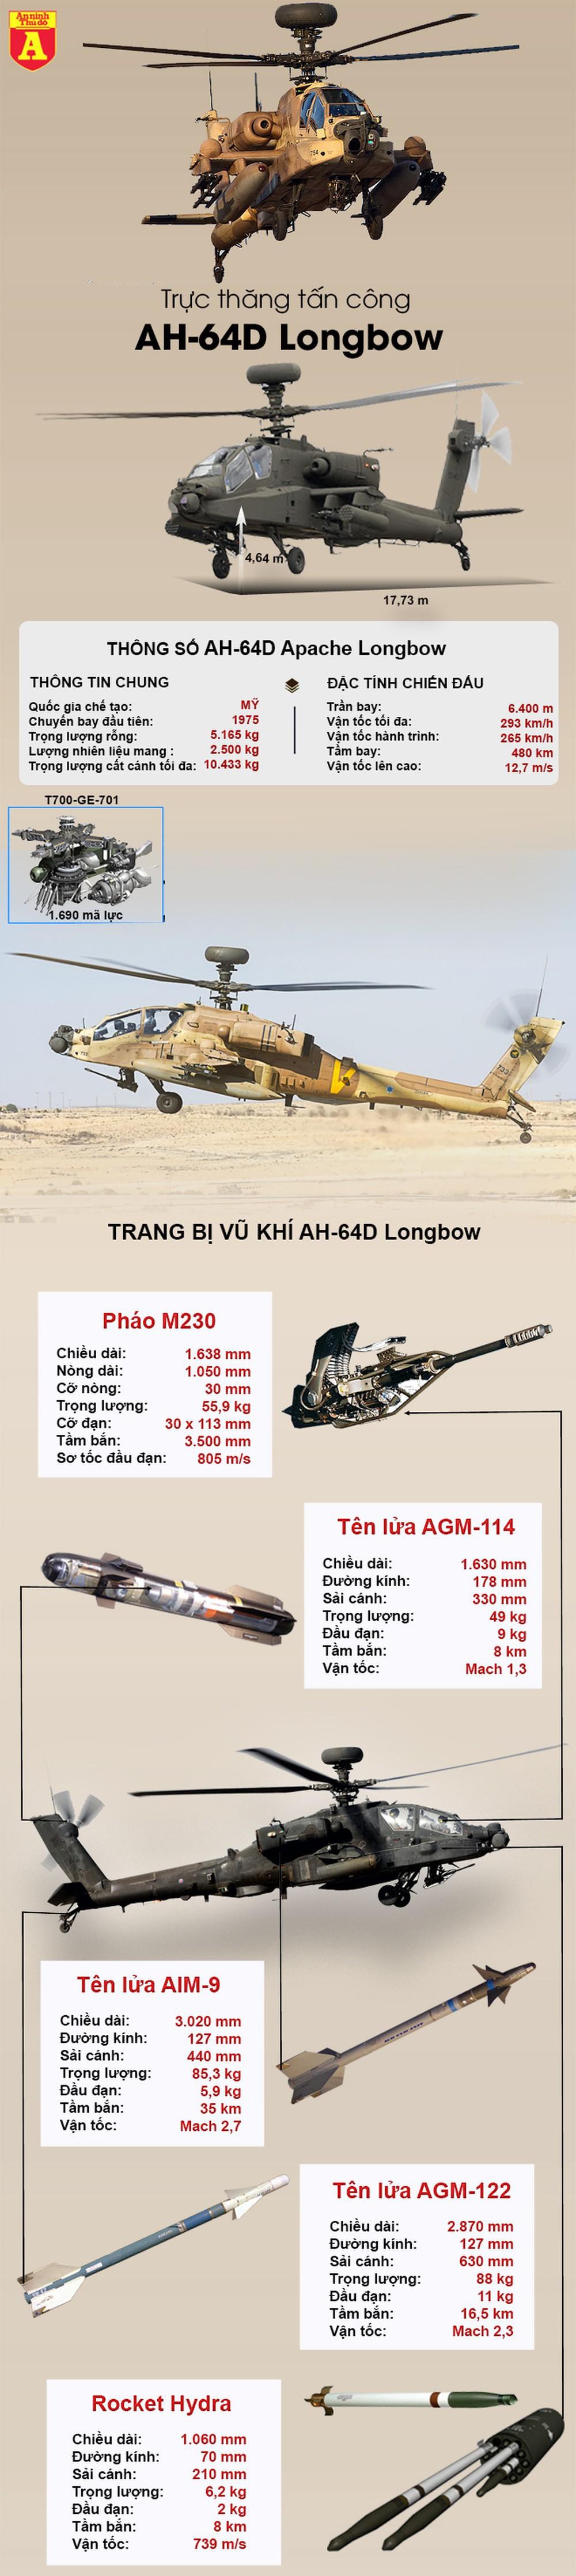 Khám phá sức mạnh của "sát thủ diệt tăng" AH-64 Apache của Mỹ điều tới sát Nga - Ảnh 1